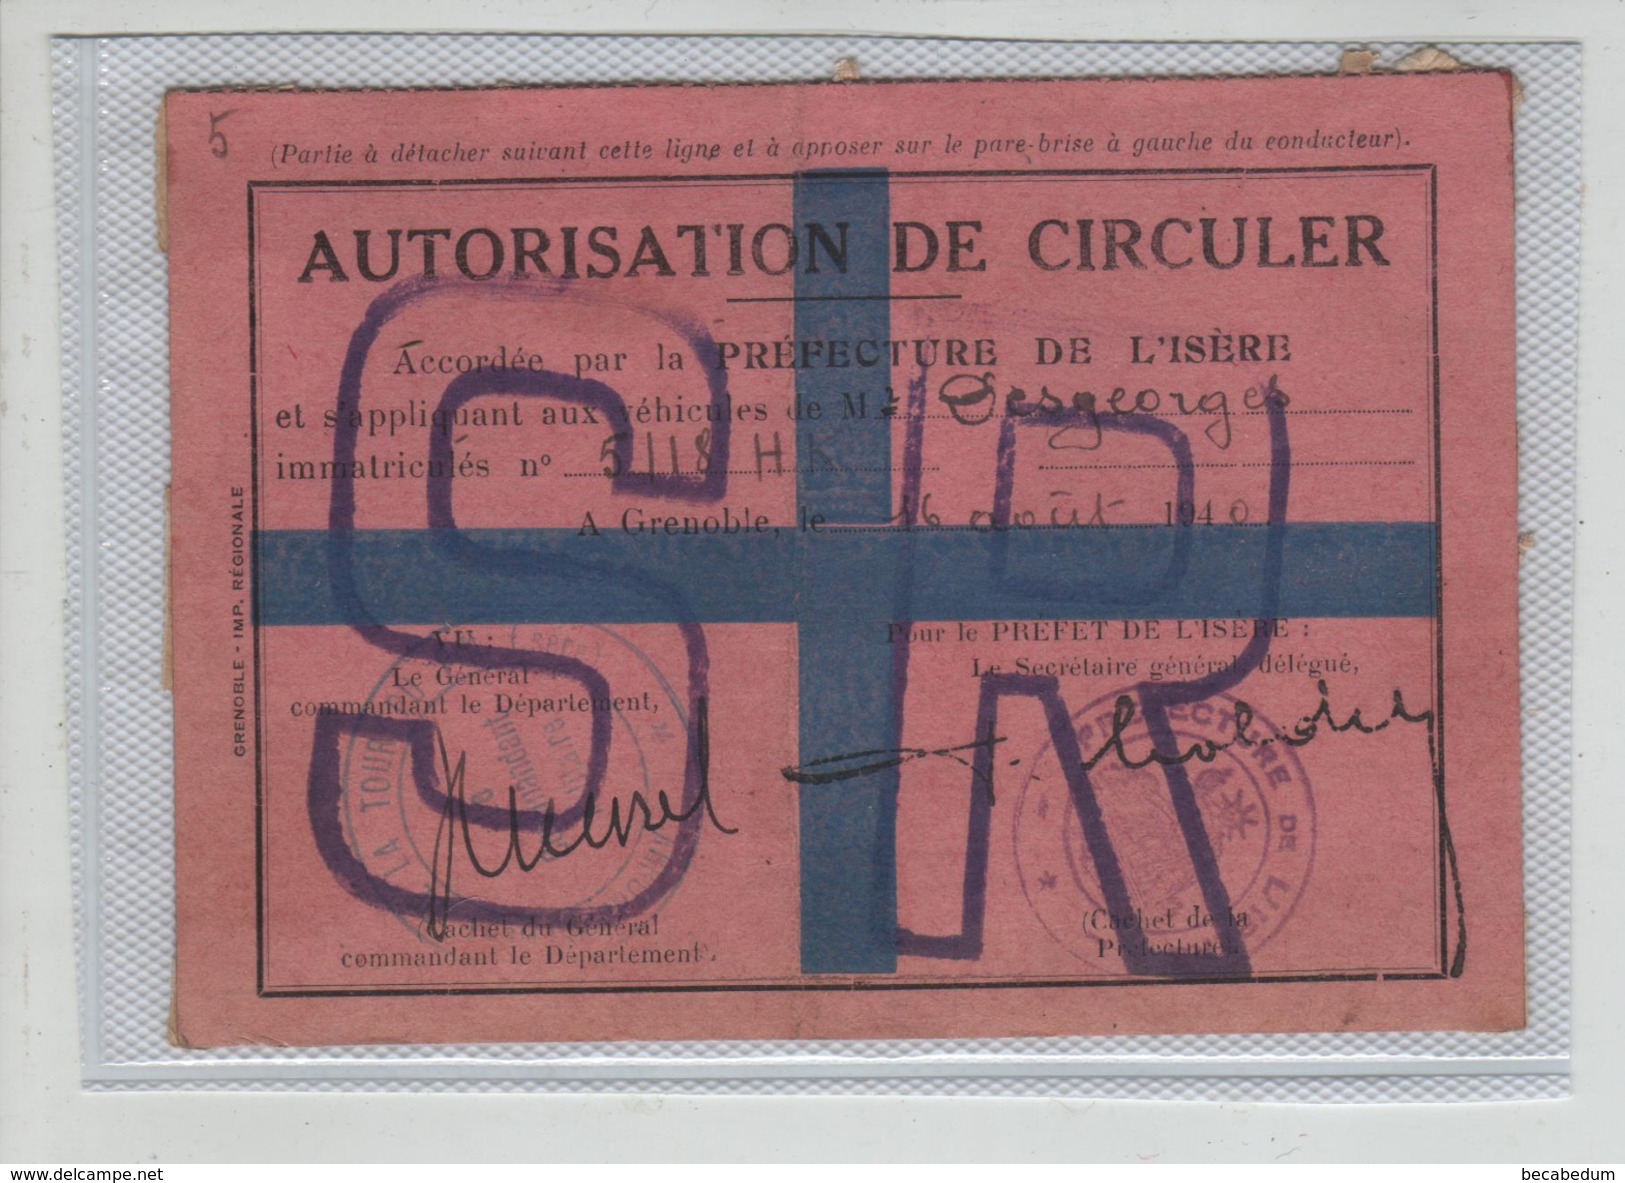 Autorisation De Circuler   Grenoble Dolomieu 1940 Desgeorges - Non Classés